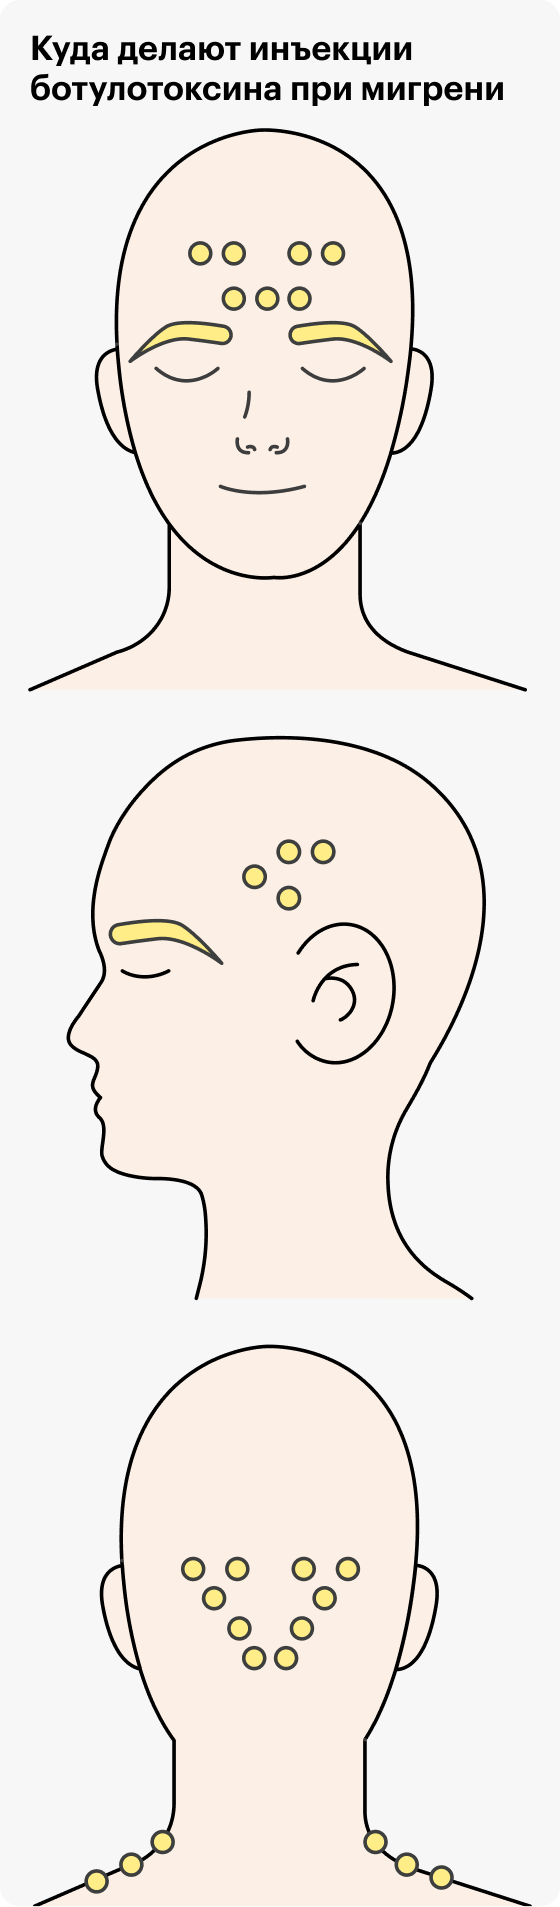 При&nbsp;мигрени инъекции ботулотоксина делают в точки в разных частях головы